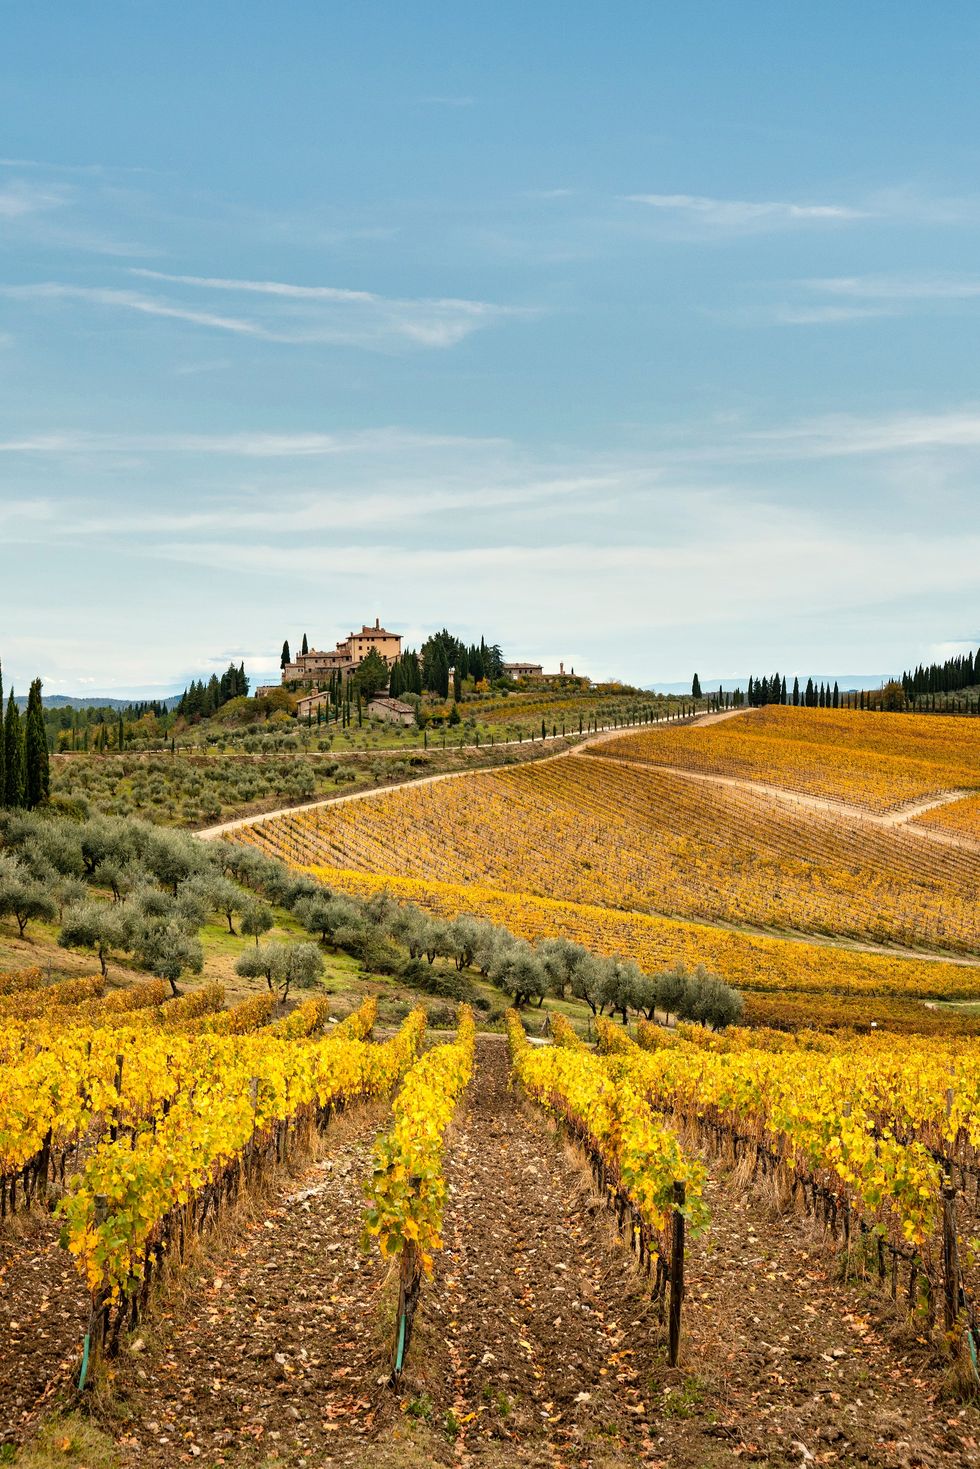 chianti region, vineyards in autumn, tuscany, italy